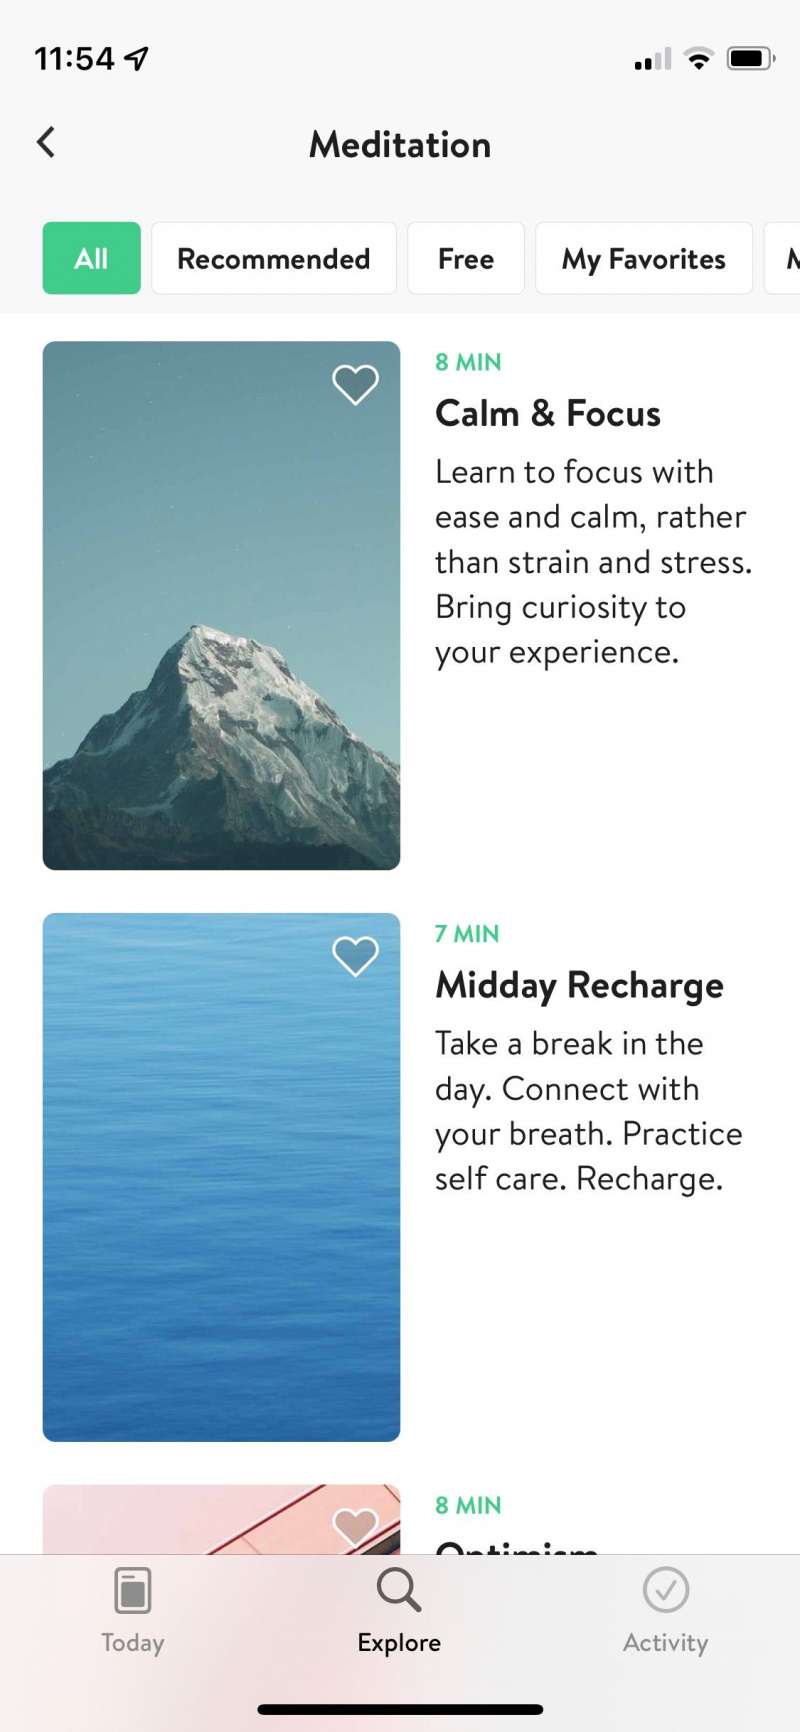   Captura de pantalla de la aplicación Asana Rebel que muestra la pantalla de selección de meditación